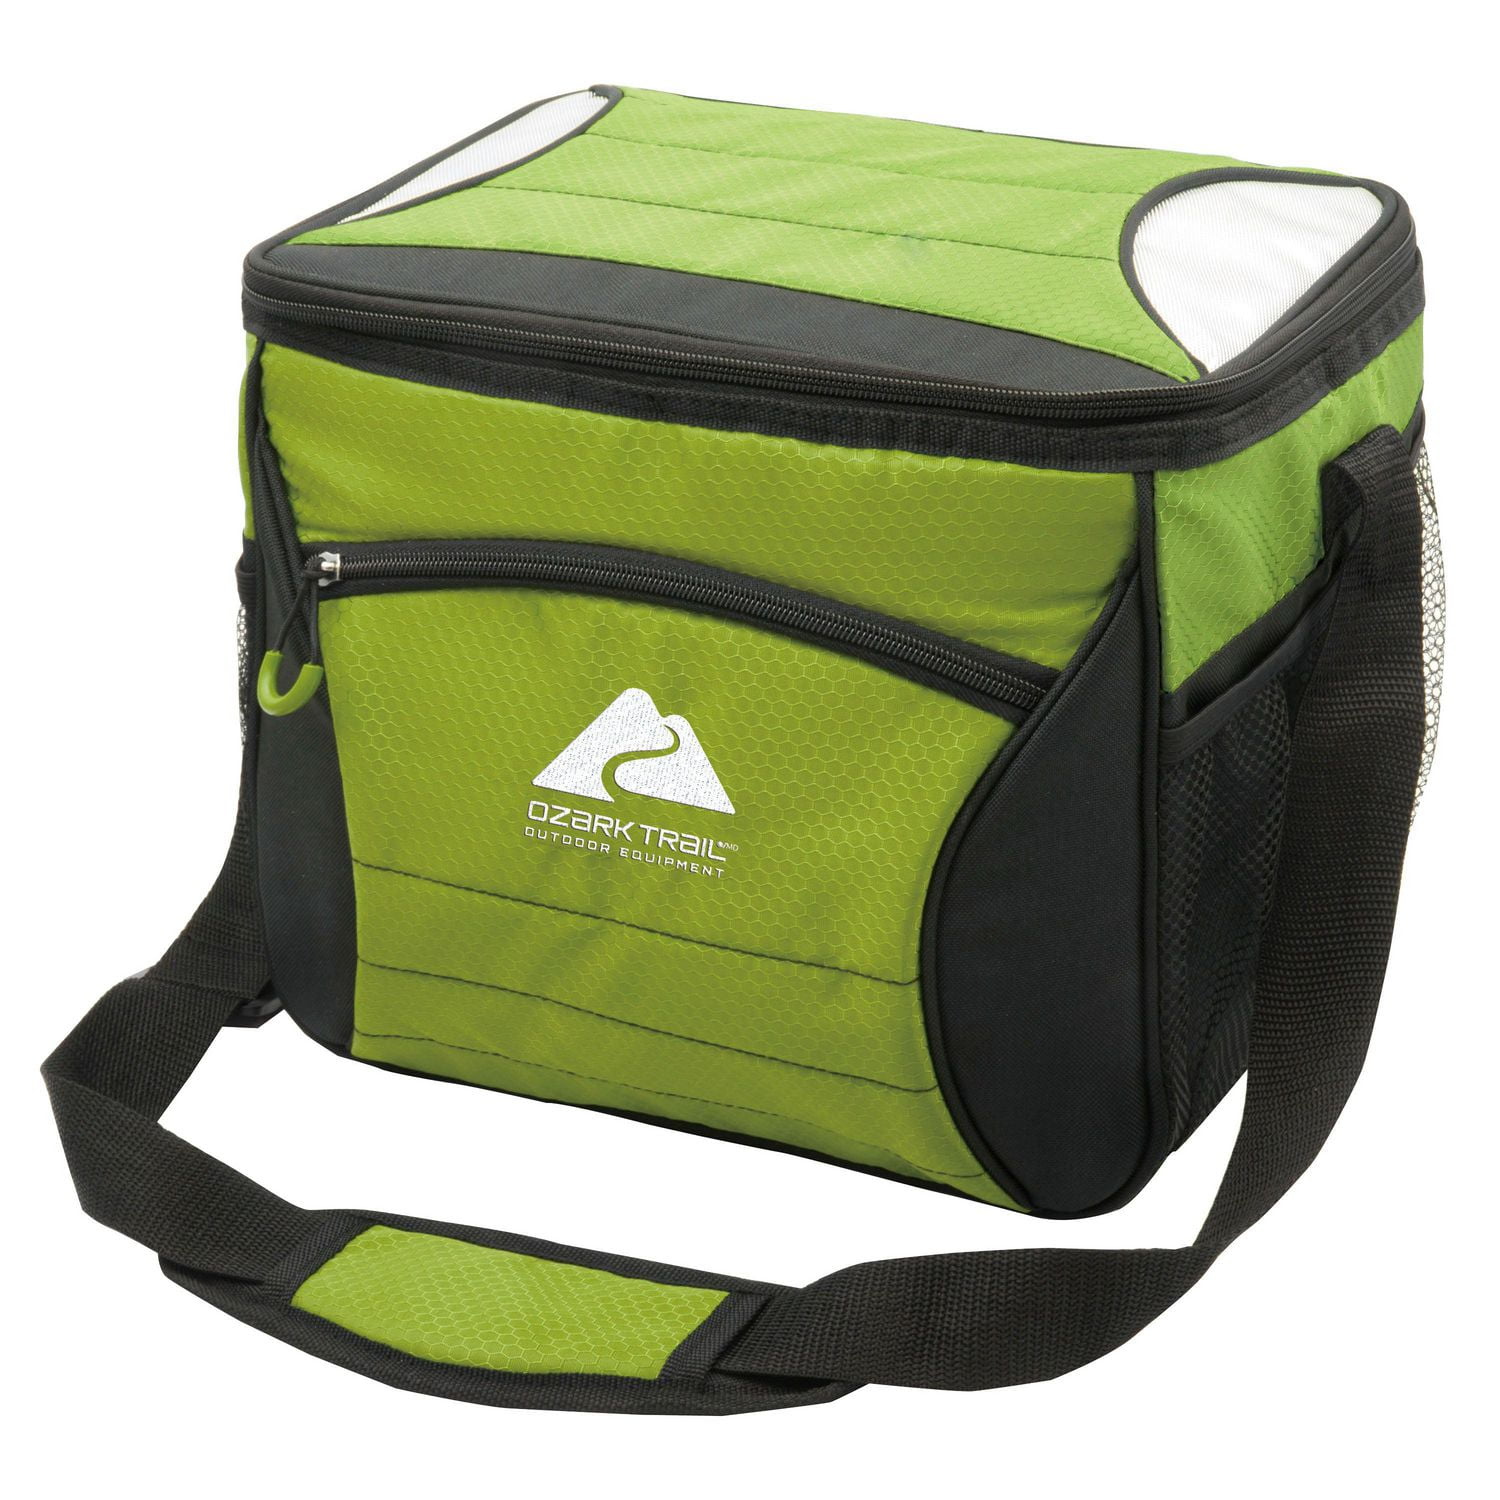 Ozark Trail 24 Can Foldable Hl Cooler Bag 